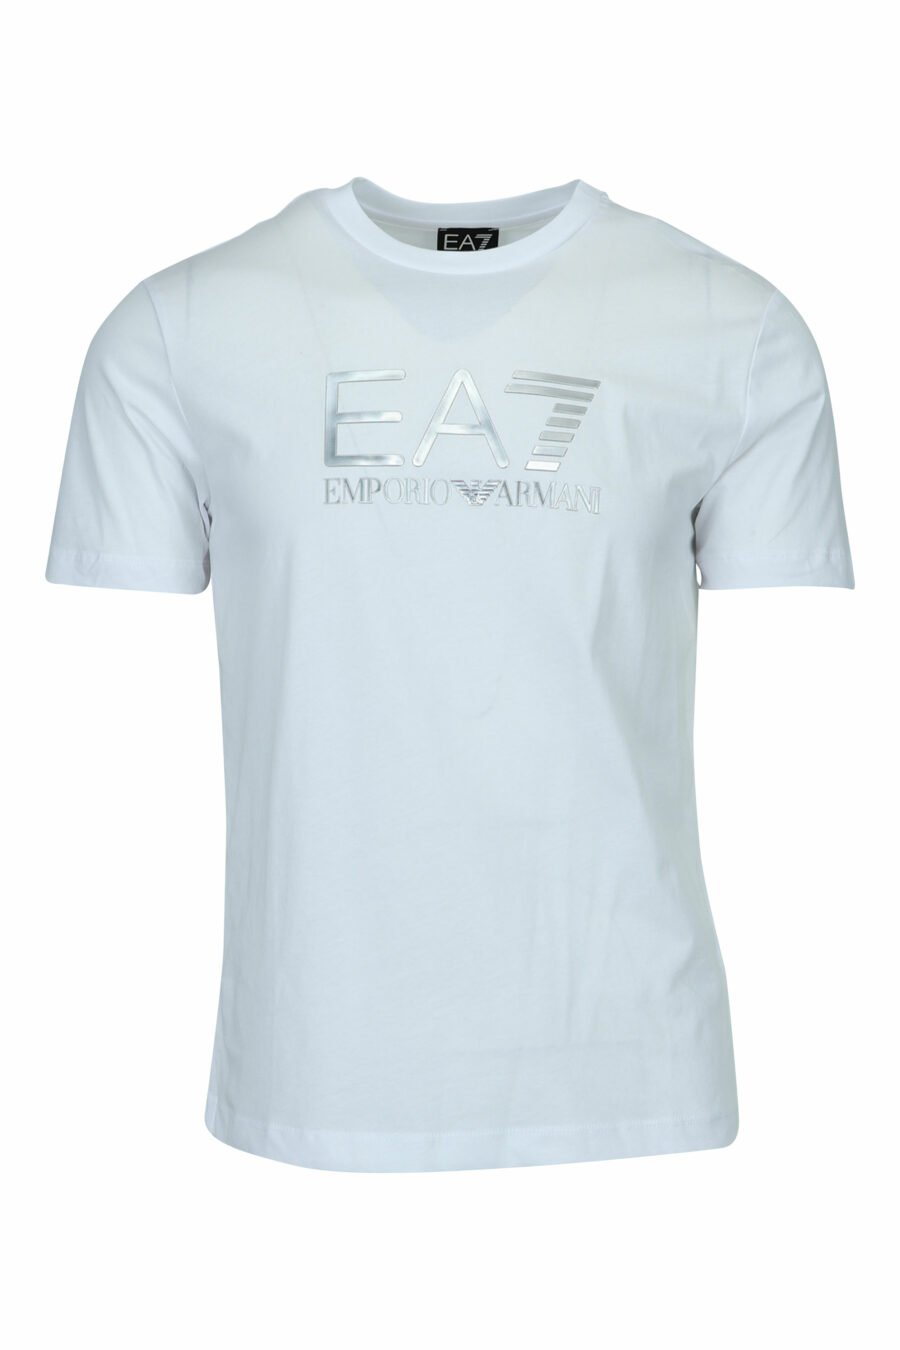 Weißes T-Shirt mit "lux identity" Maxilogo im Farbverlauf - 8057970673118